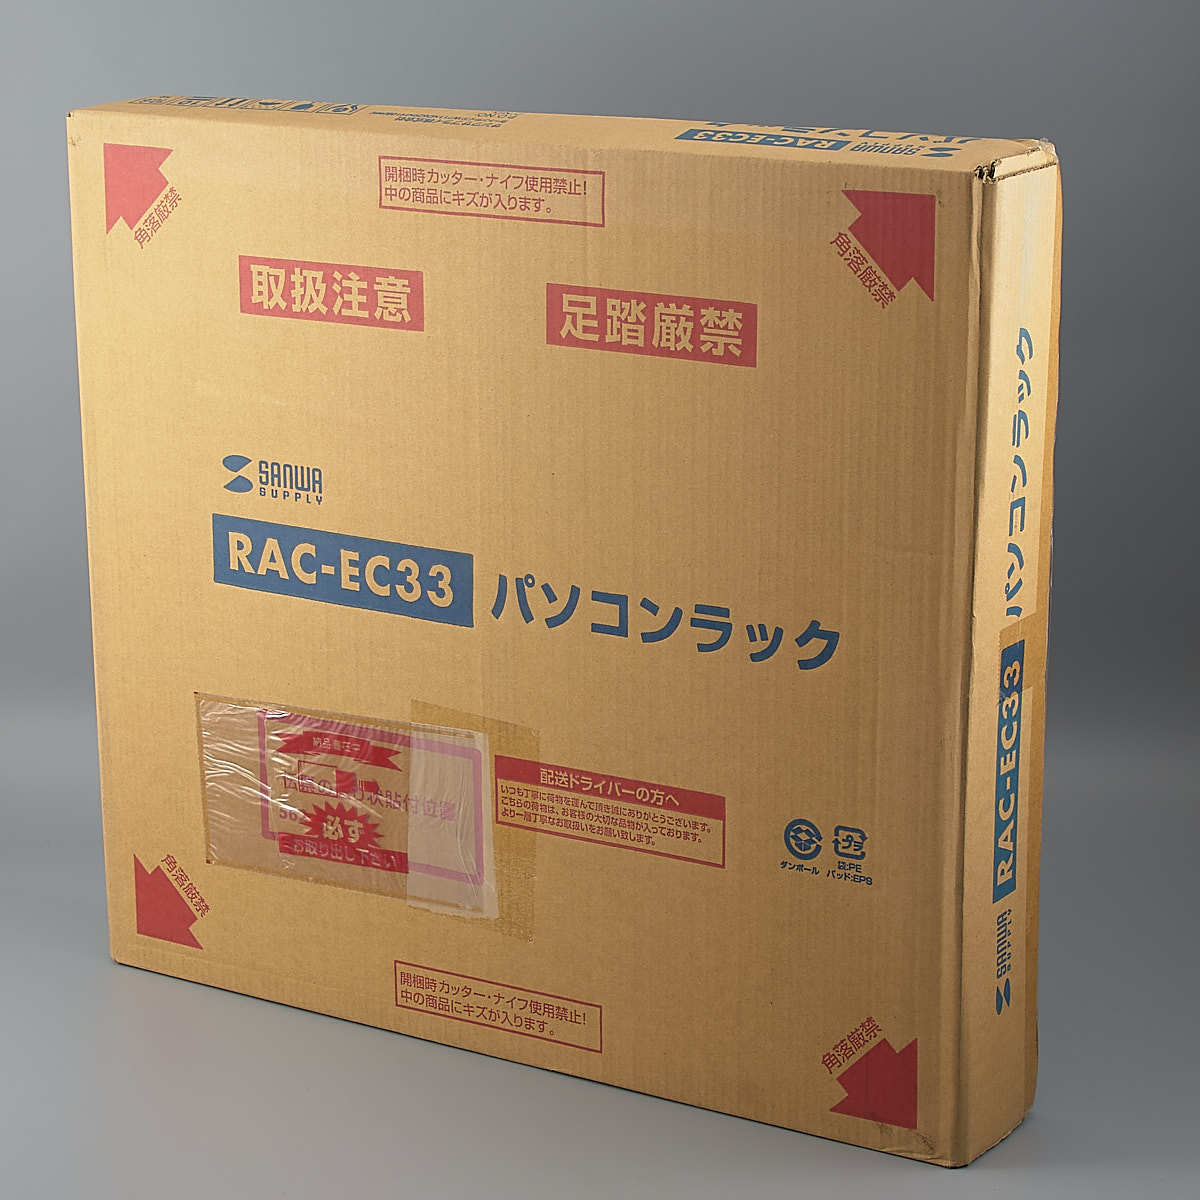 送料無料!! サンワ パソコンラック RAC-EC33 (W600×D600mm×H700mm) 未使用品 【ku】3